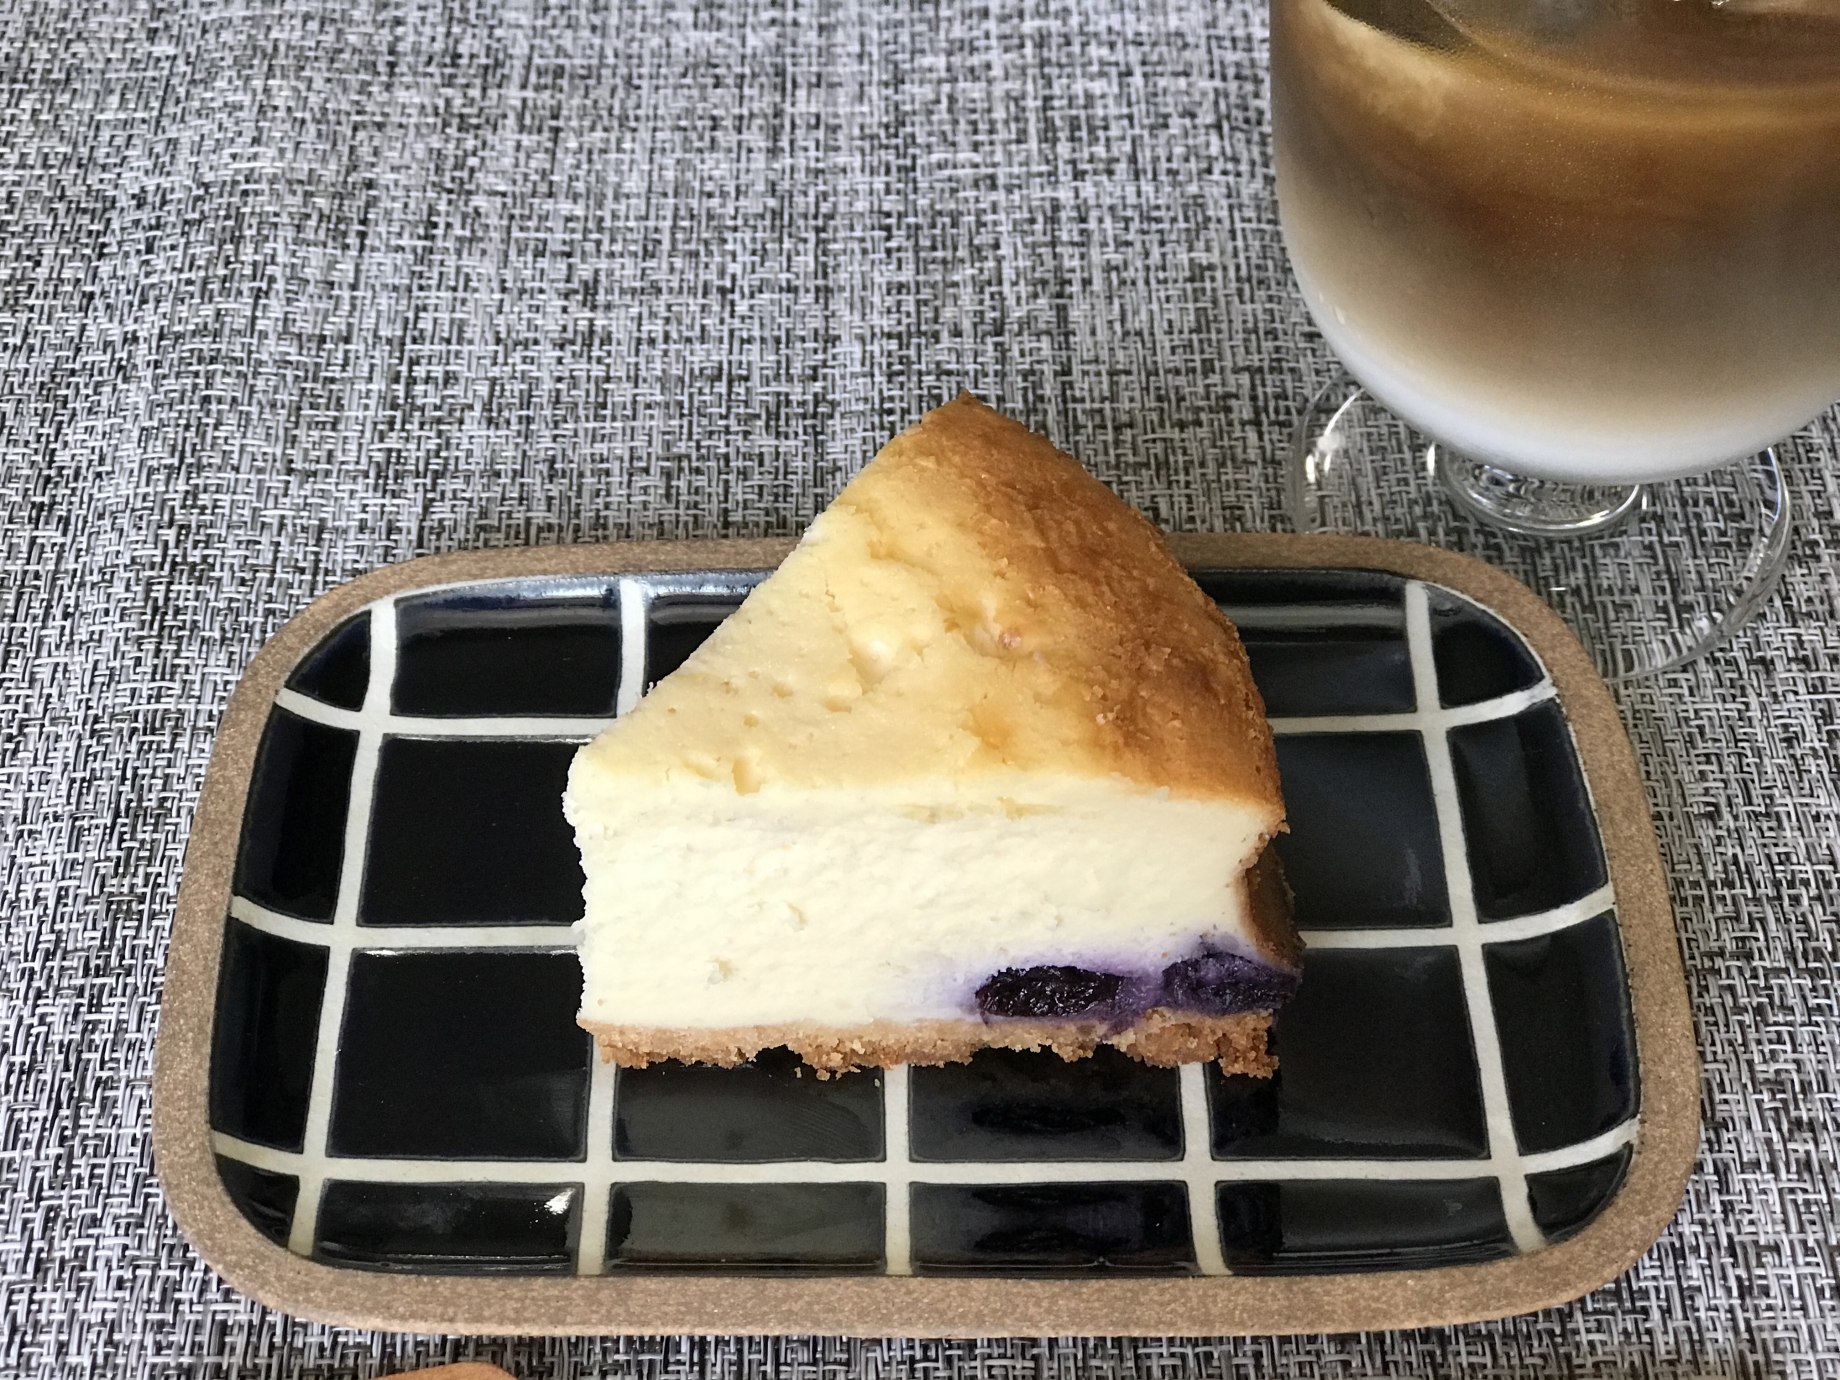 ブルーベリーのベイクドチーズケーキ Eatpick